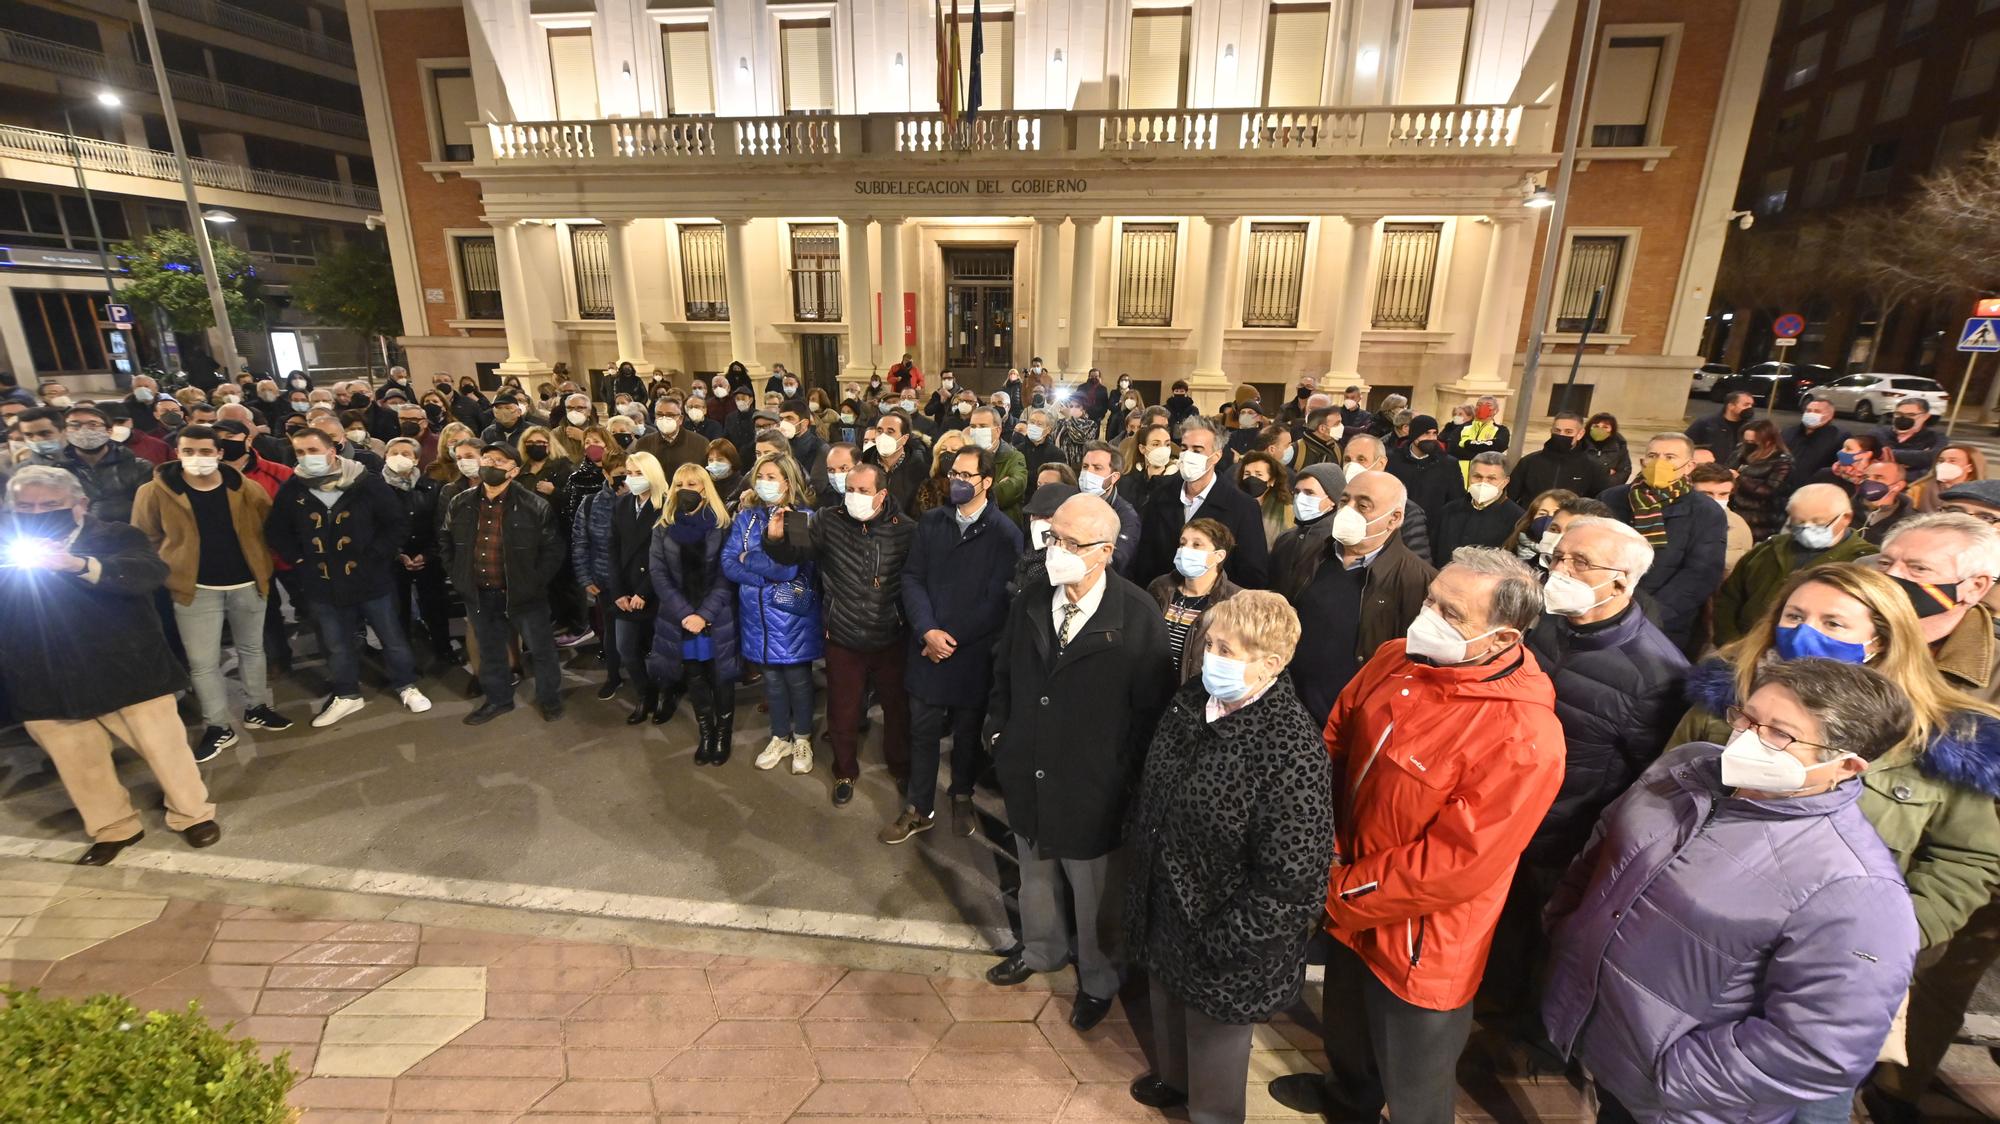 Manifestación contra la reforma de Lledó